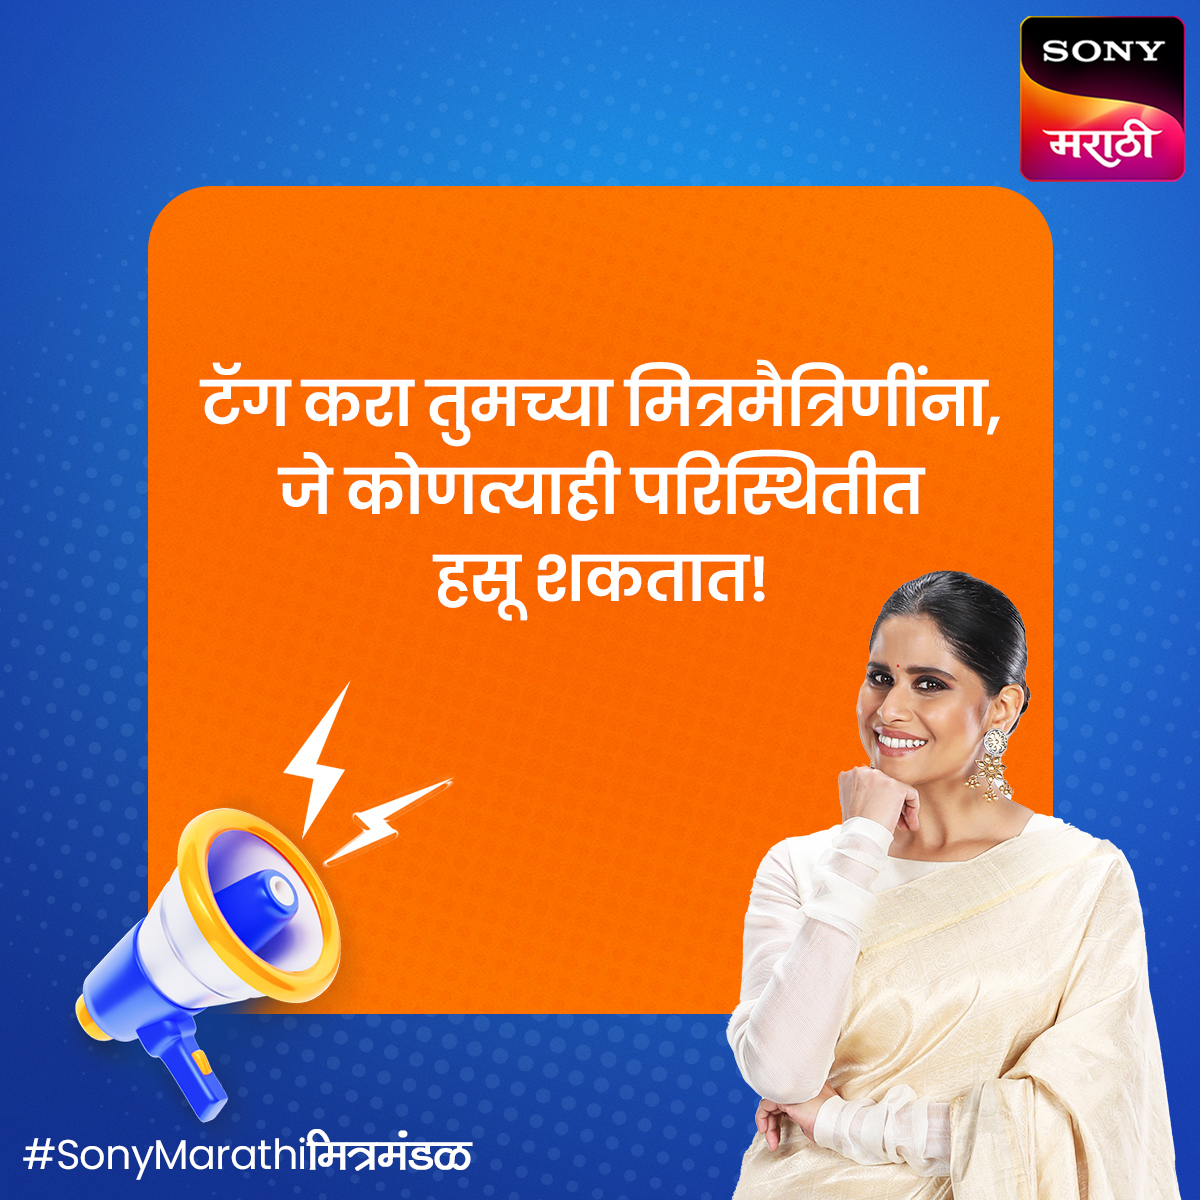 तुमच्या सदैव हसऱ्या मित्रमंडळींना कमेंटमध्ये टॅग करा..

#SonyMarathiमित्रमंडळ
#सोनीमराठी । #SonyMarathi
#विणूयाअतूटनाती | #VinuyaAtutNati